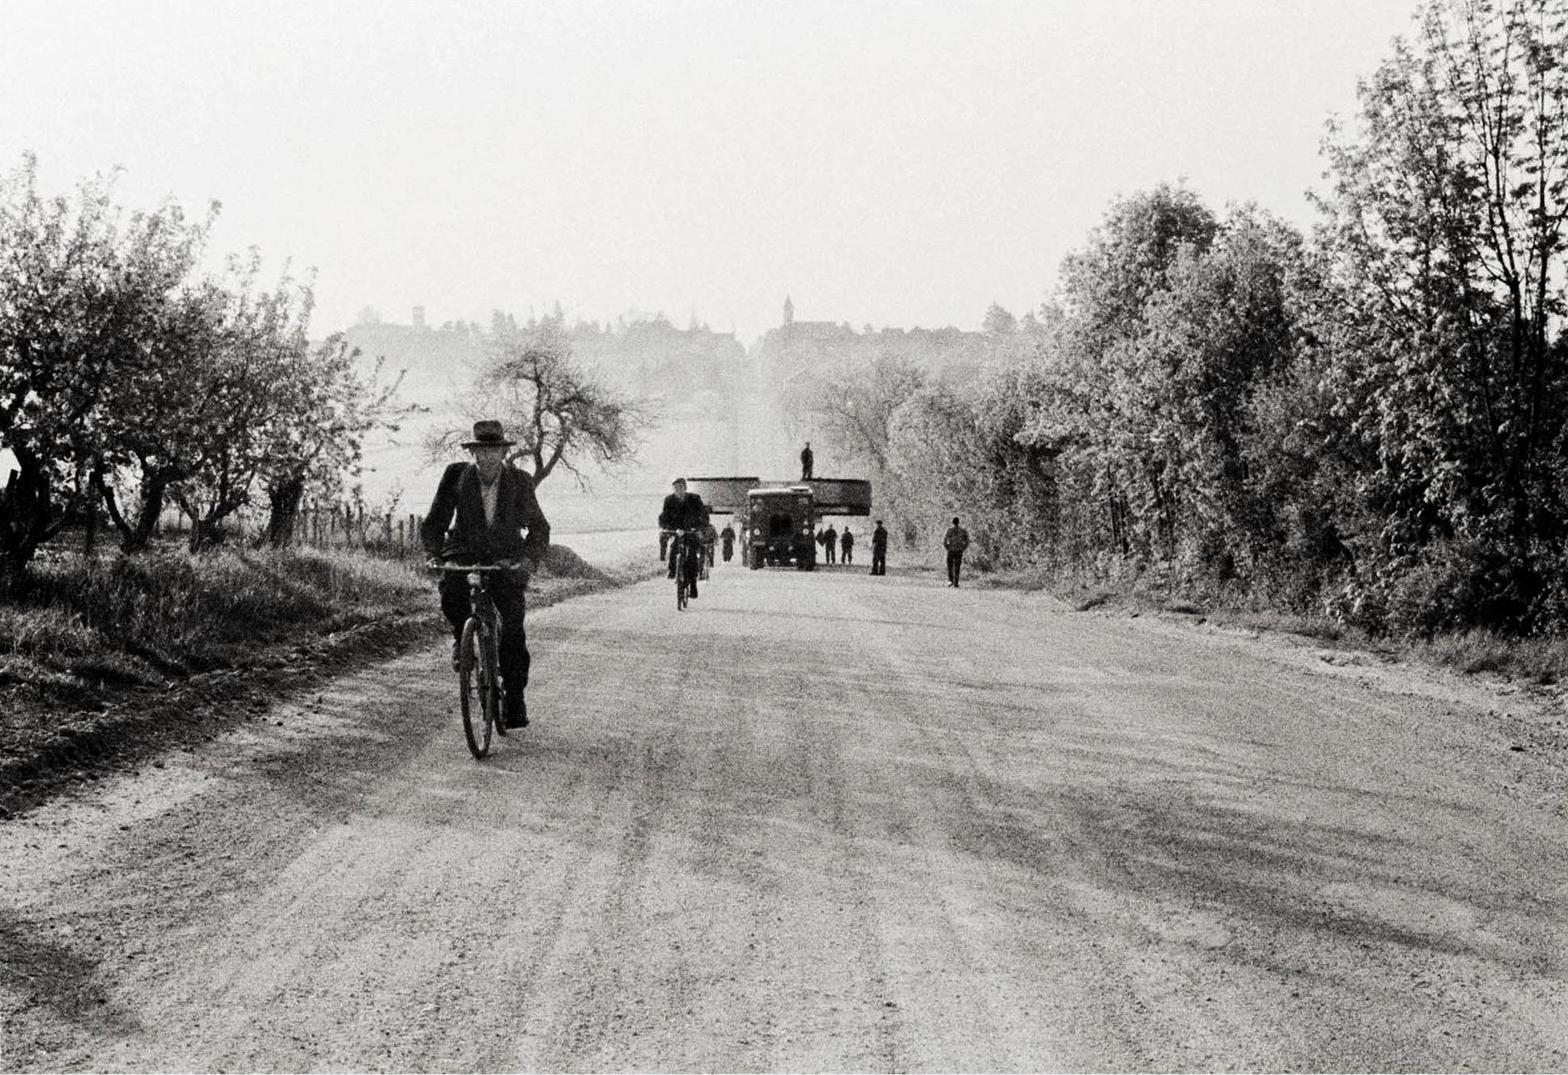 Des vélos et un camion avec un aimant géant circulant sur une route de campagne